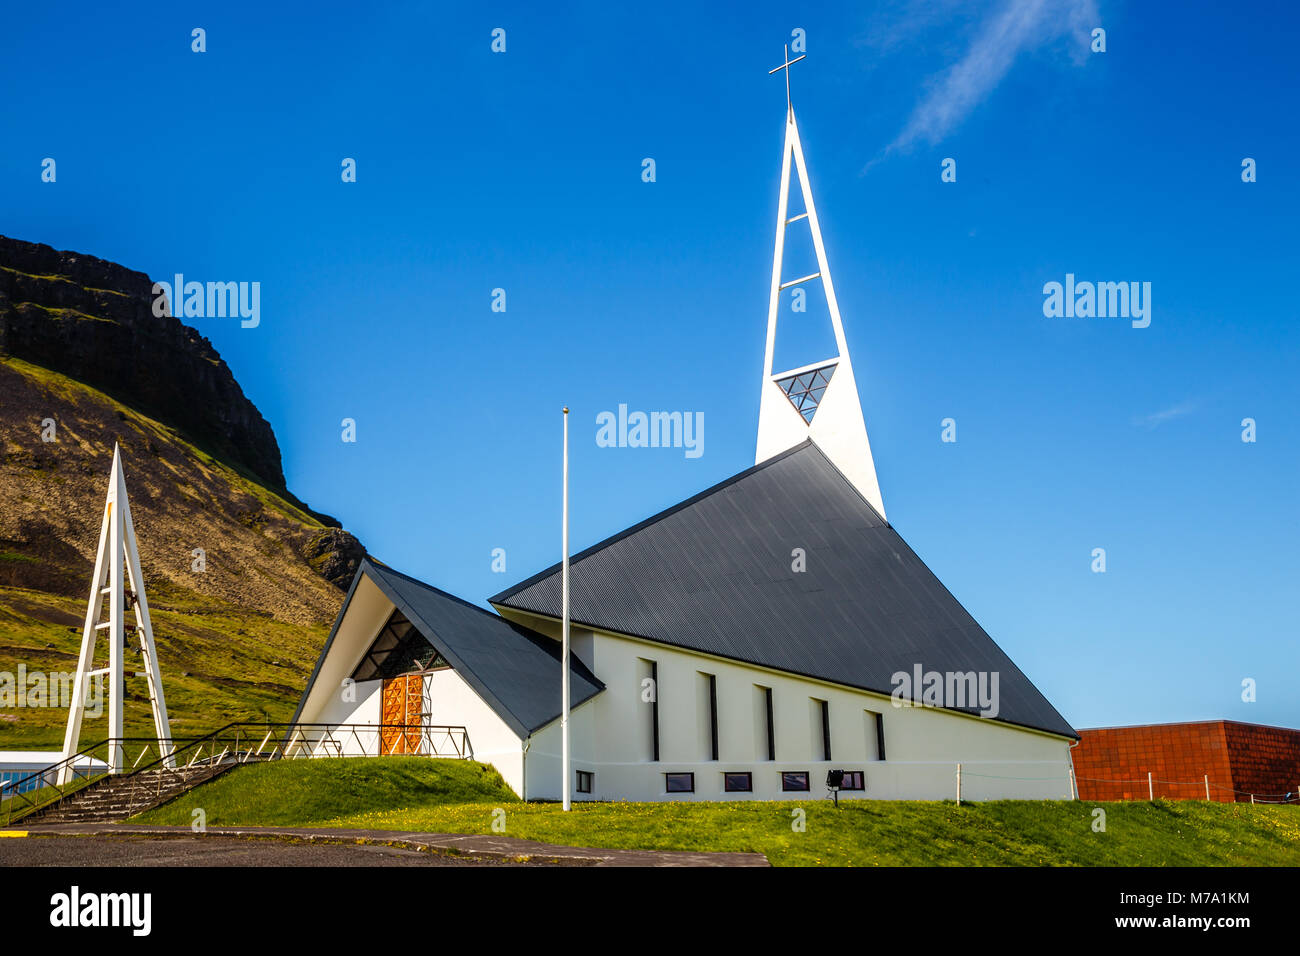 Olafsvikurkirkja forme triangulaire de style moderne blanc Lutheran Church, Olafsvik, Péninsule de Snæfellsnes, à l'ouest de l'Islande Banque D'Images